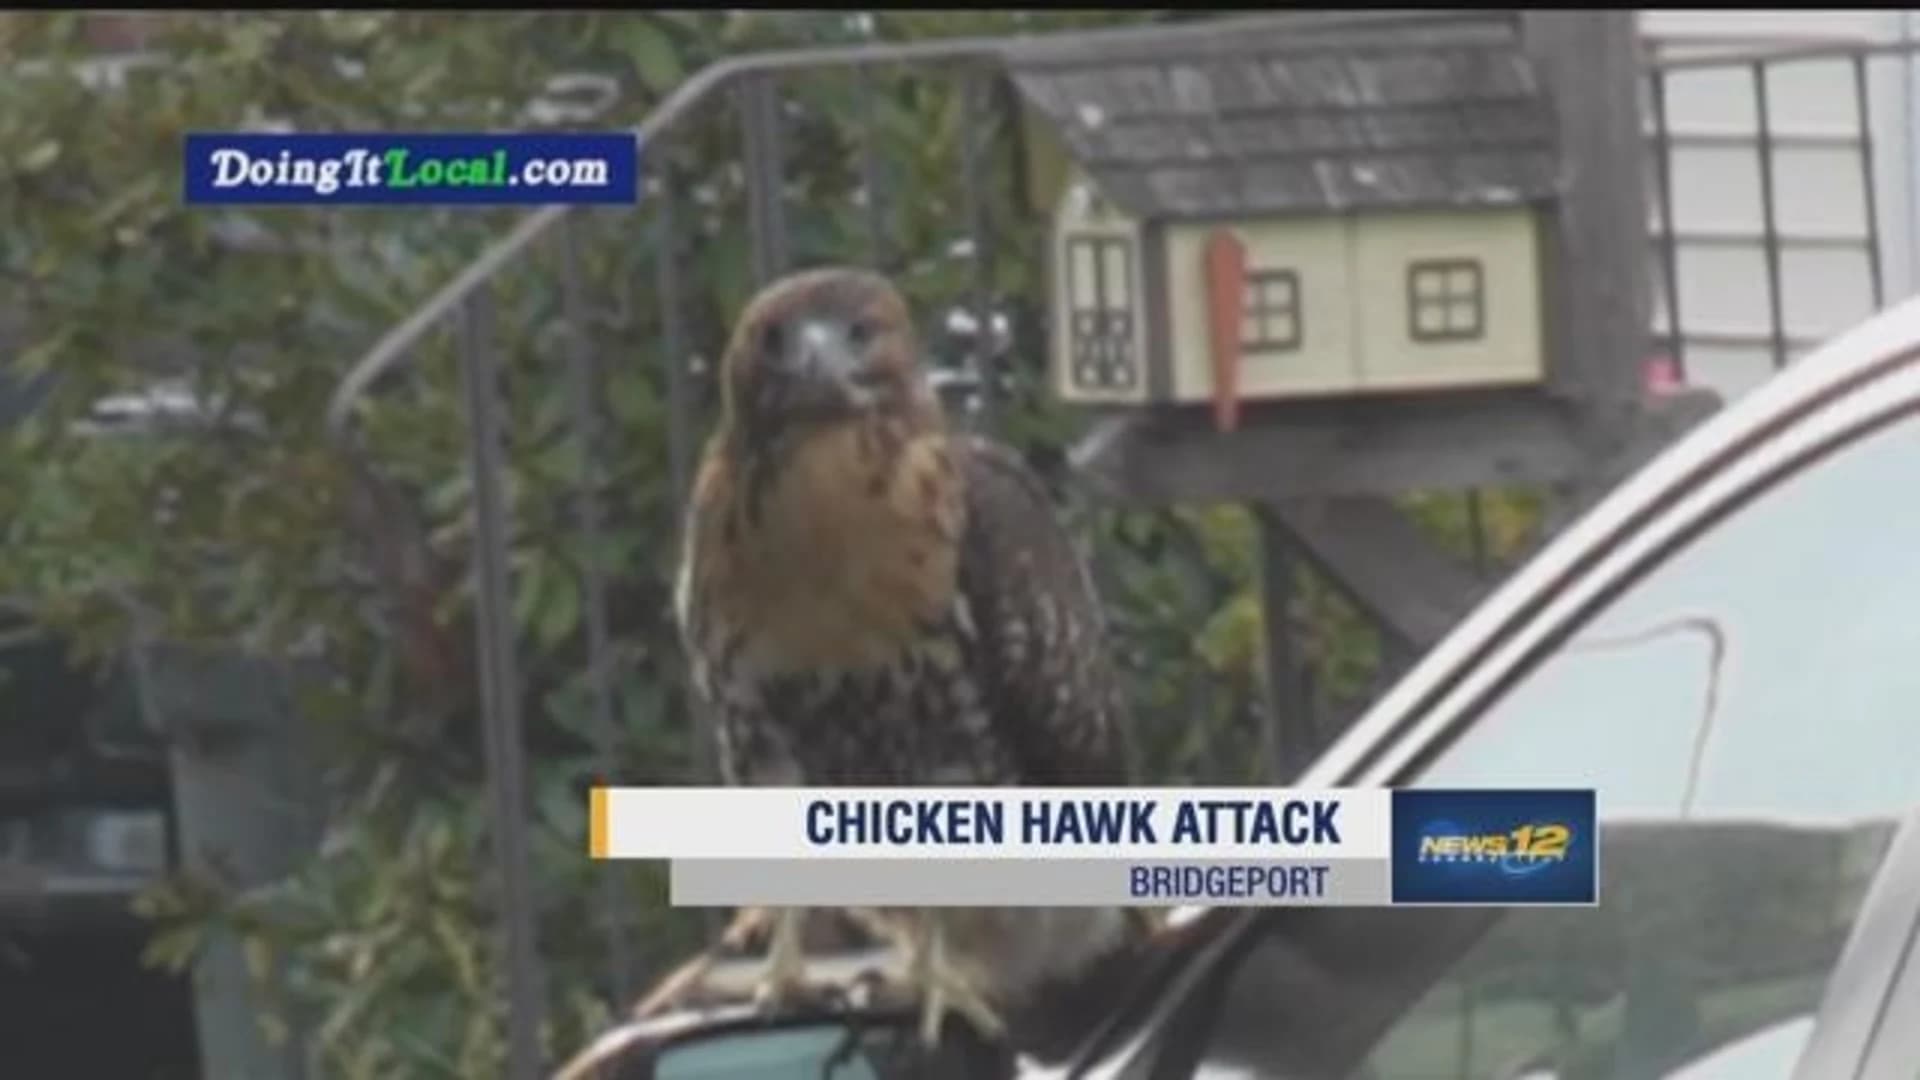 Chicken hawk injures 2 in Bridgeport